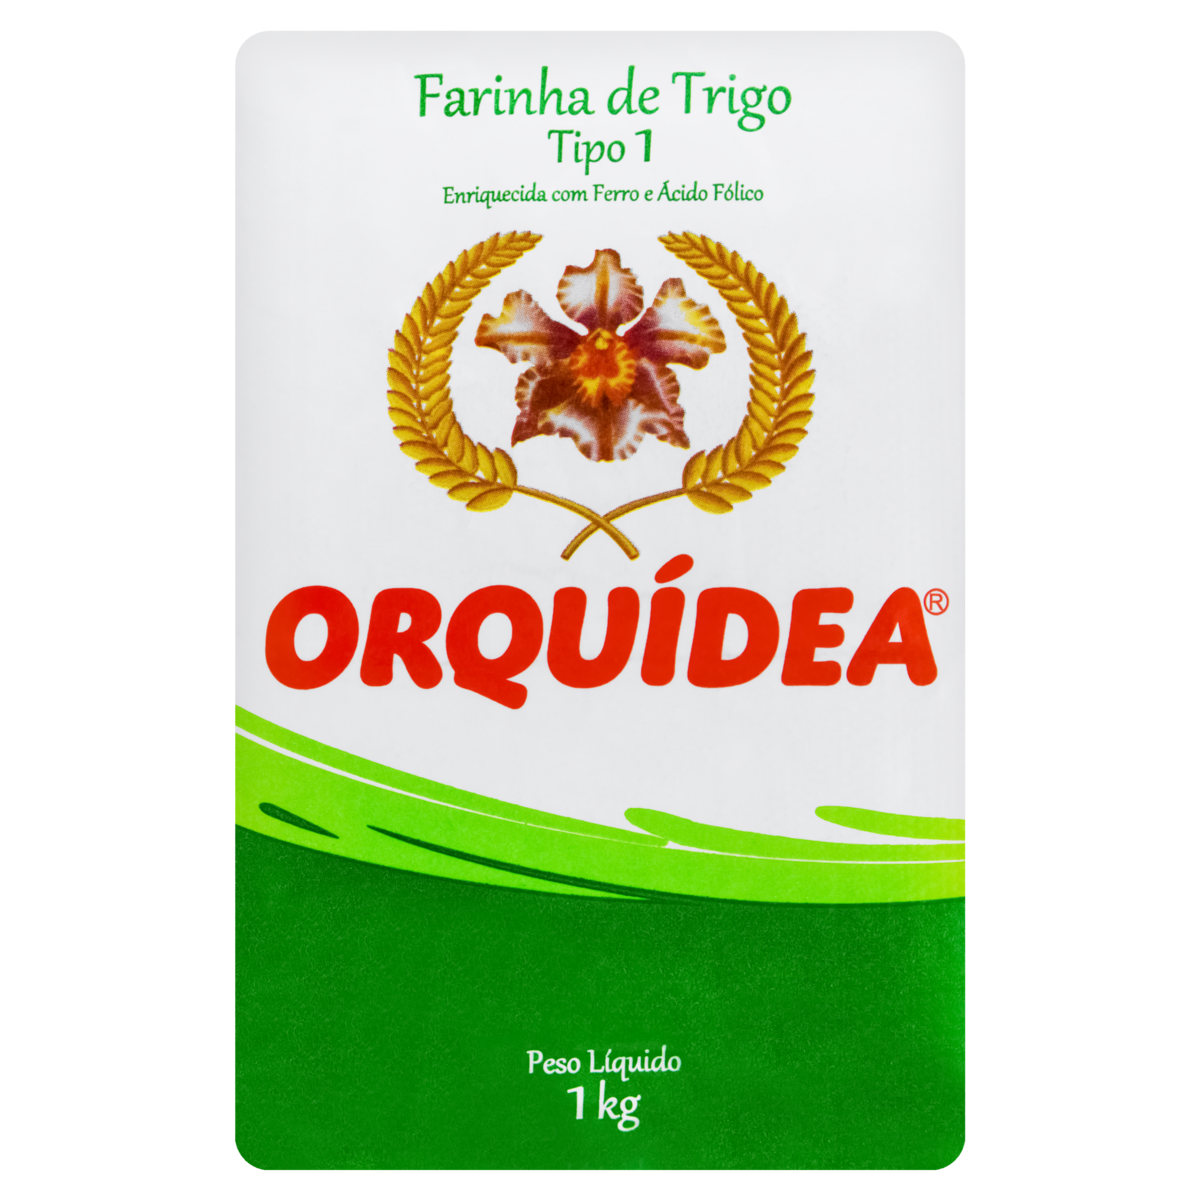 7896412819520 - FARINHA DE TRIGO TIPO 1 ORQUÍDEA PACOTE 1KG